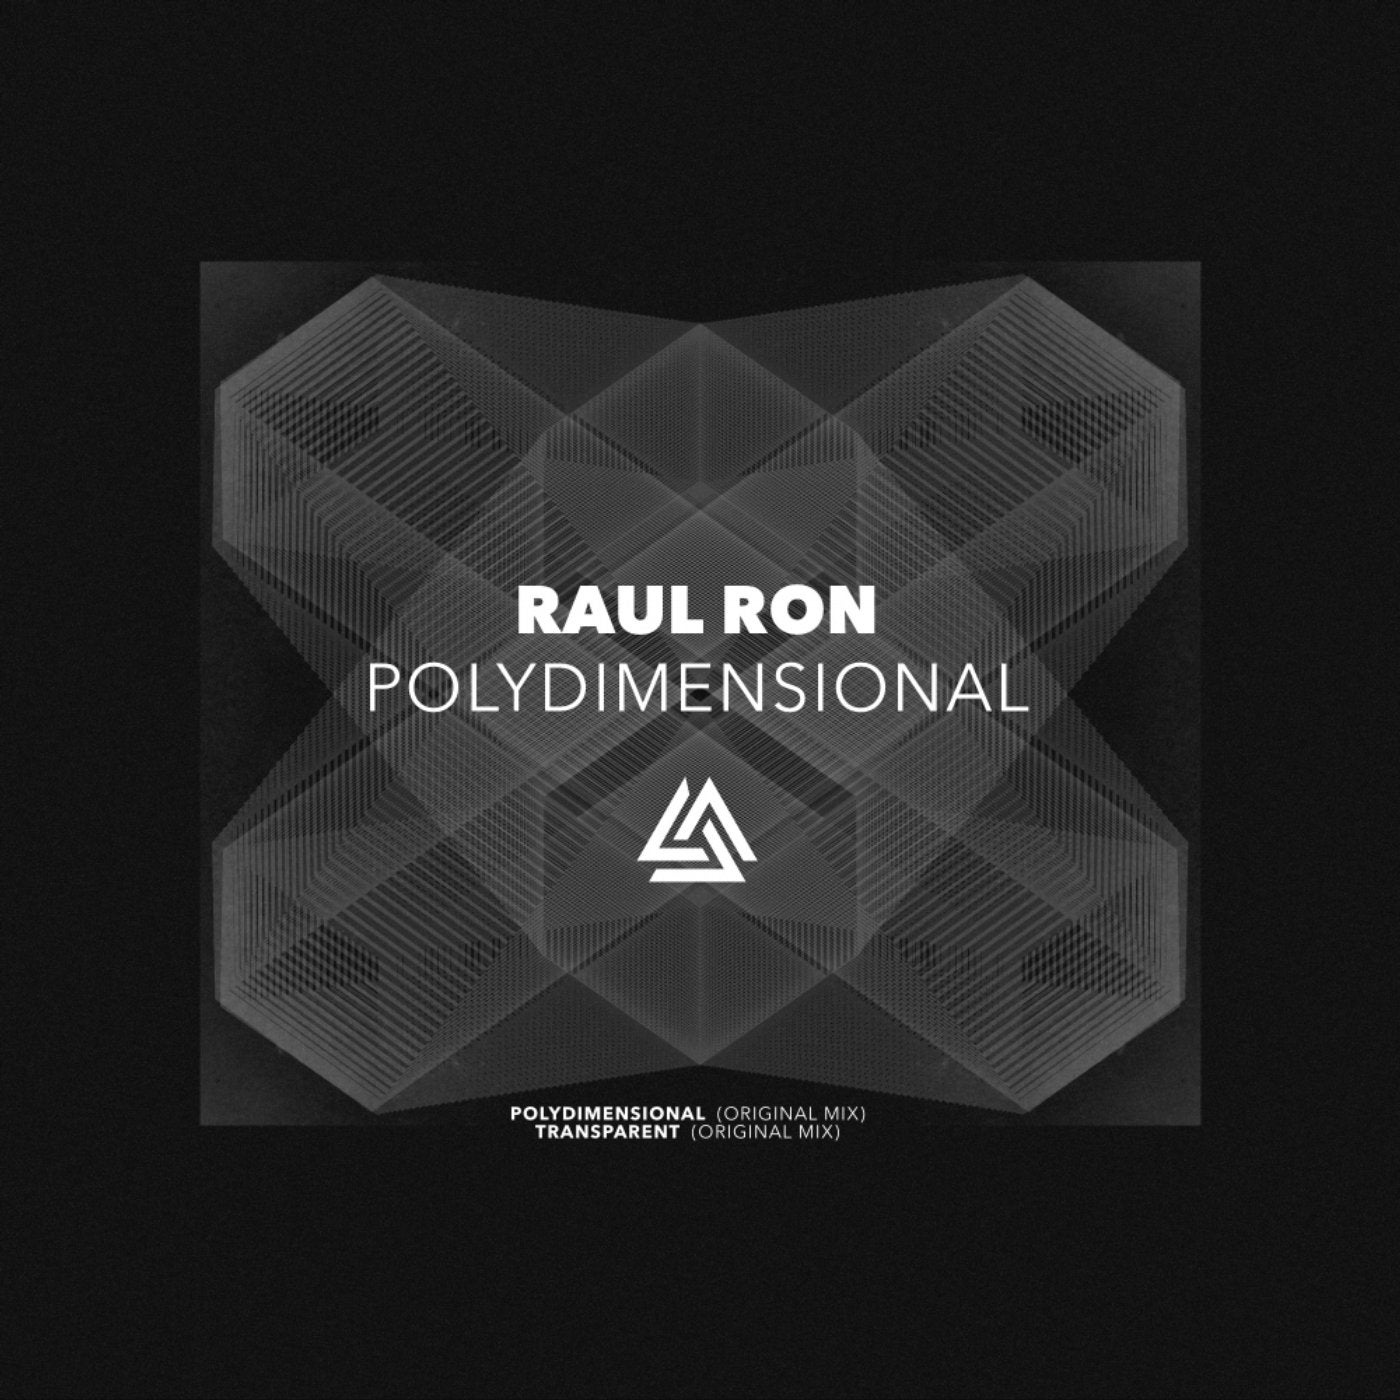 Polydimensional